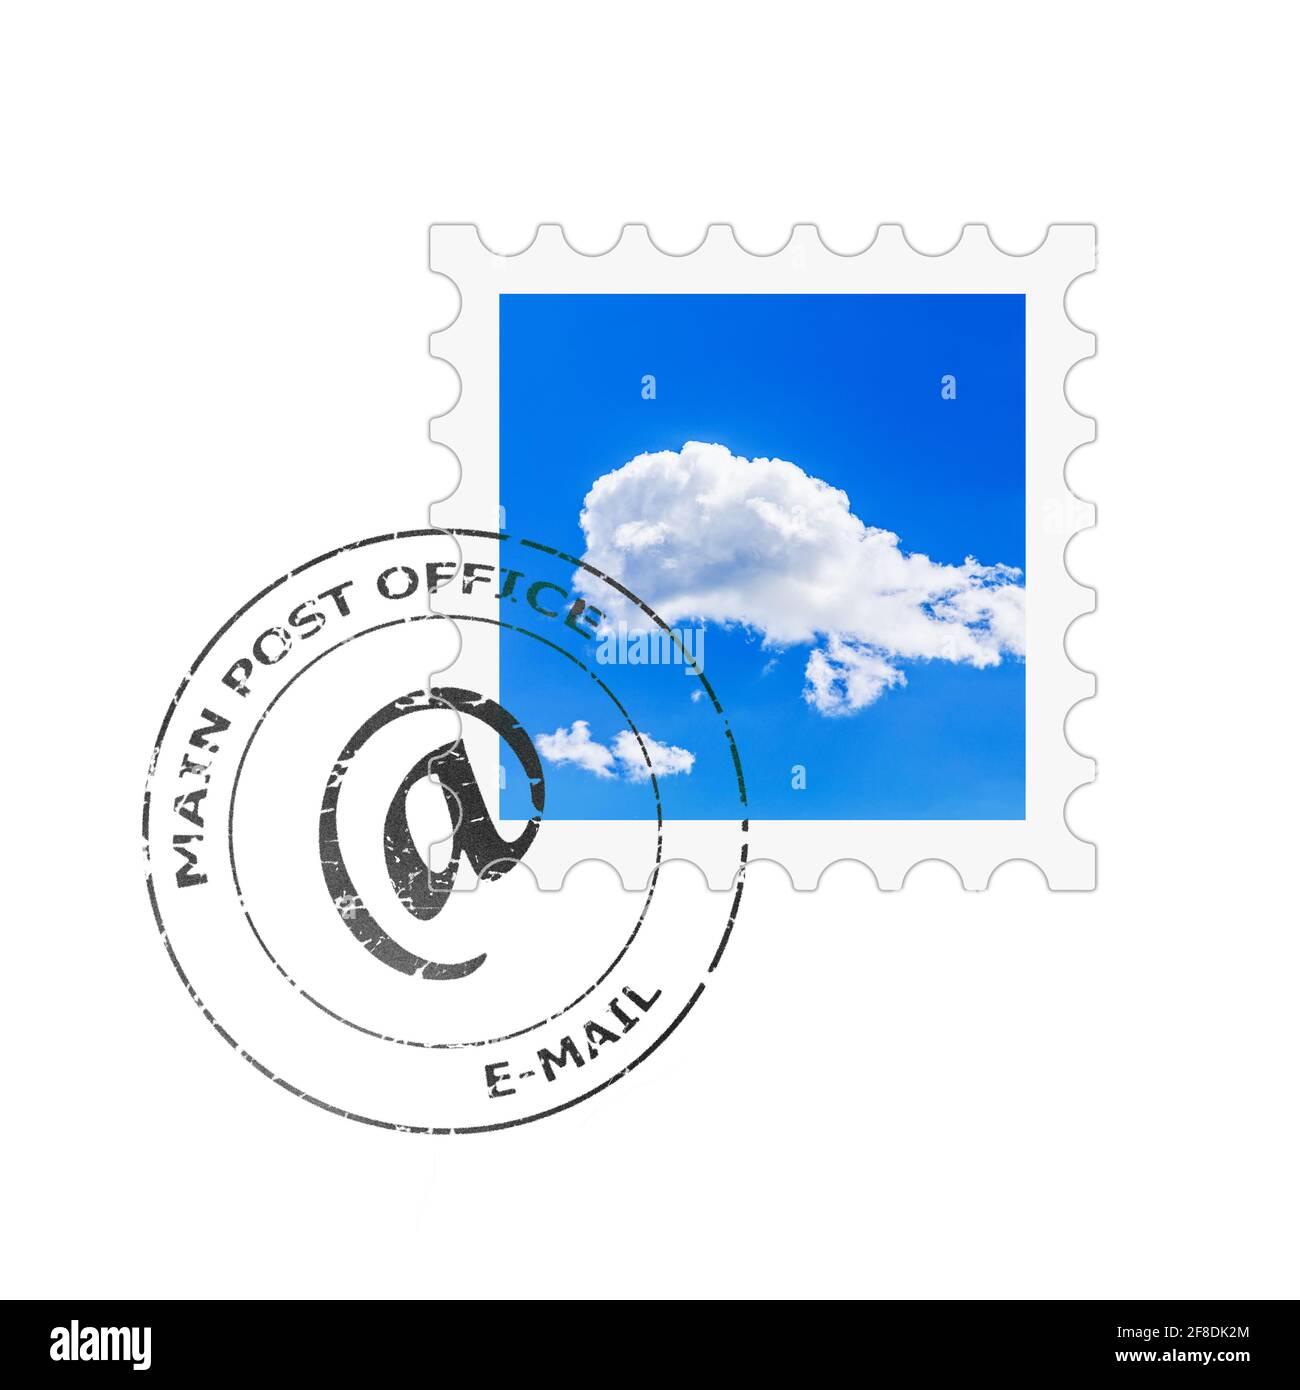 Timbre-poste et cachet de la poste pour l'enveloppe de courrier électronique Banque D'Images